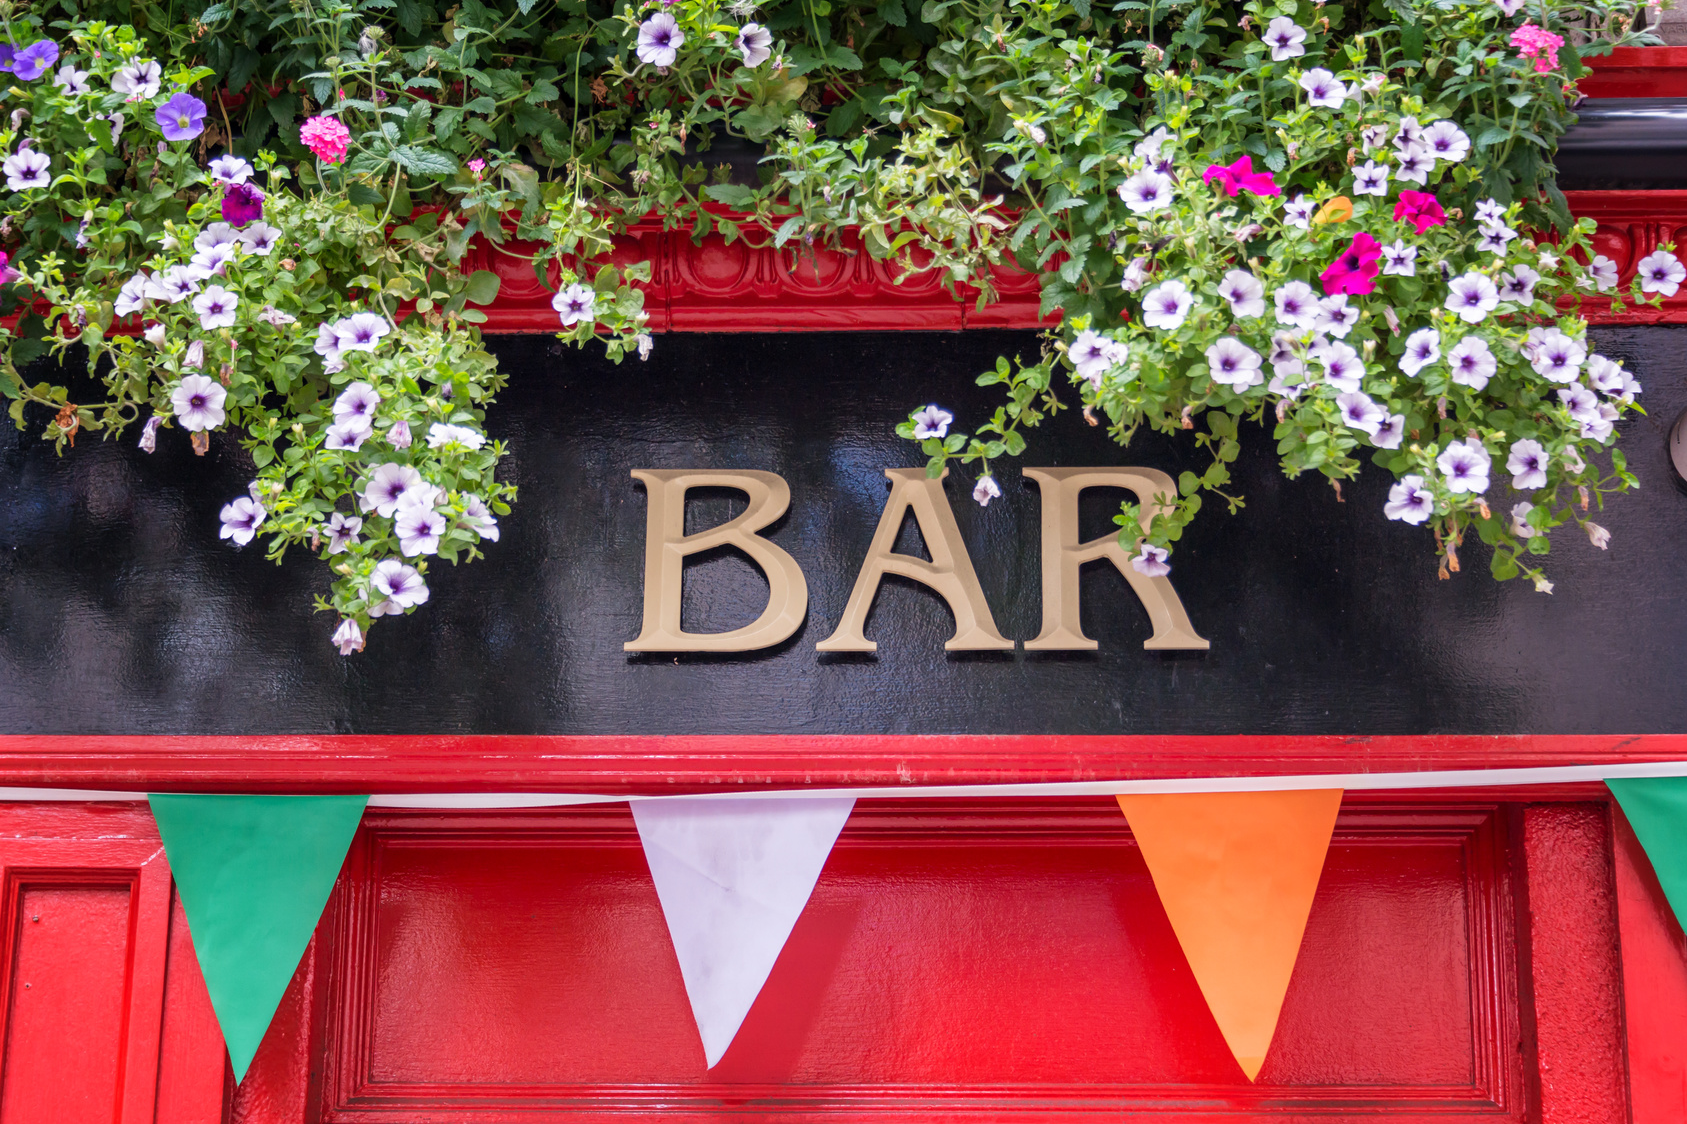 Das Wort Bar in Gold auf schwarzem Hintergrund über einer roten Holztür, vor der Wimpel in grün, weiß und orange hängen.